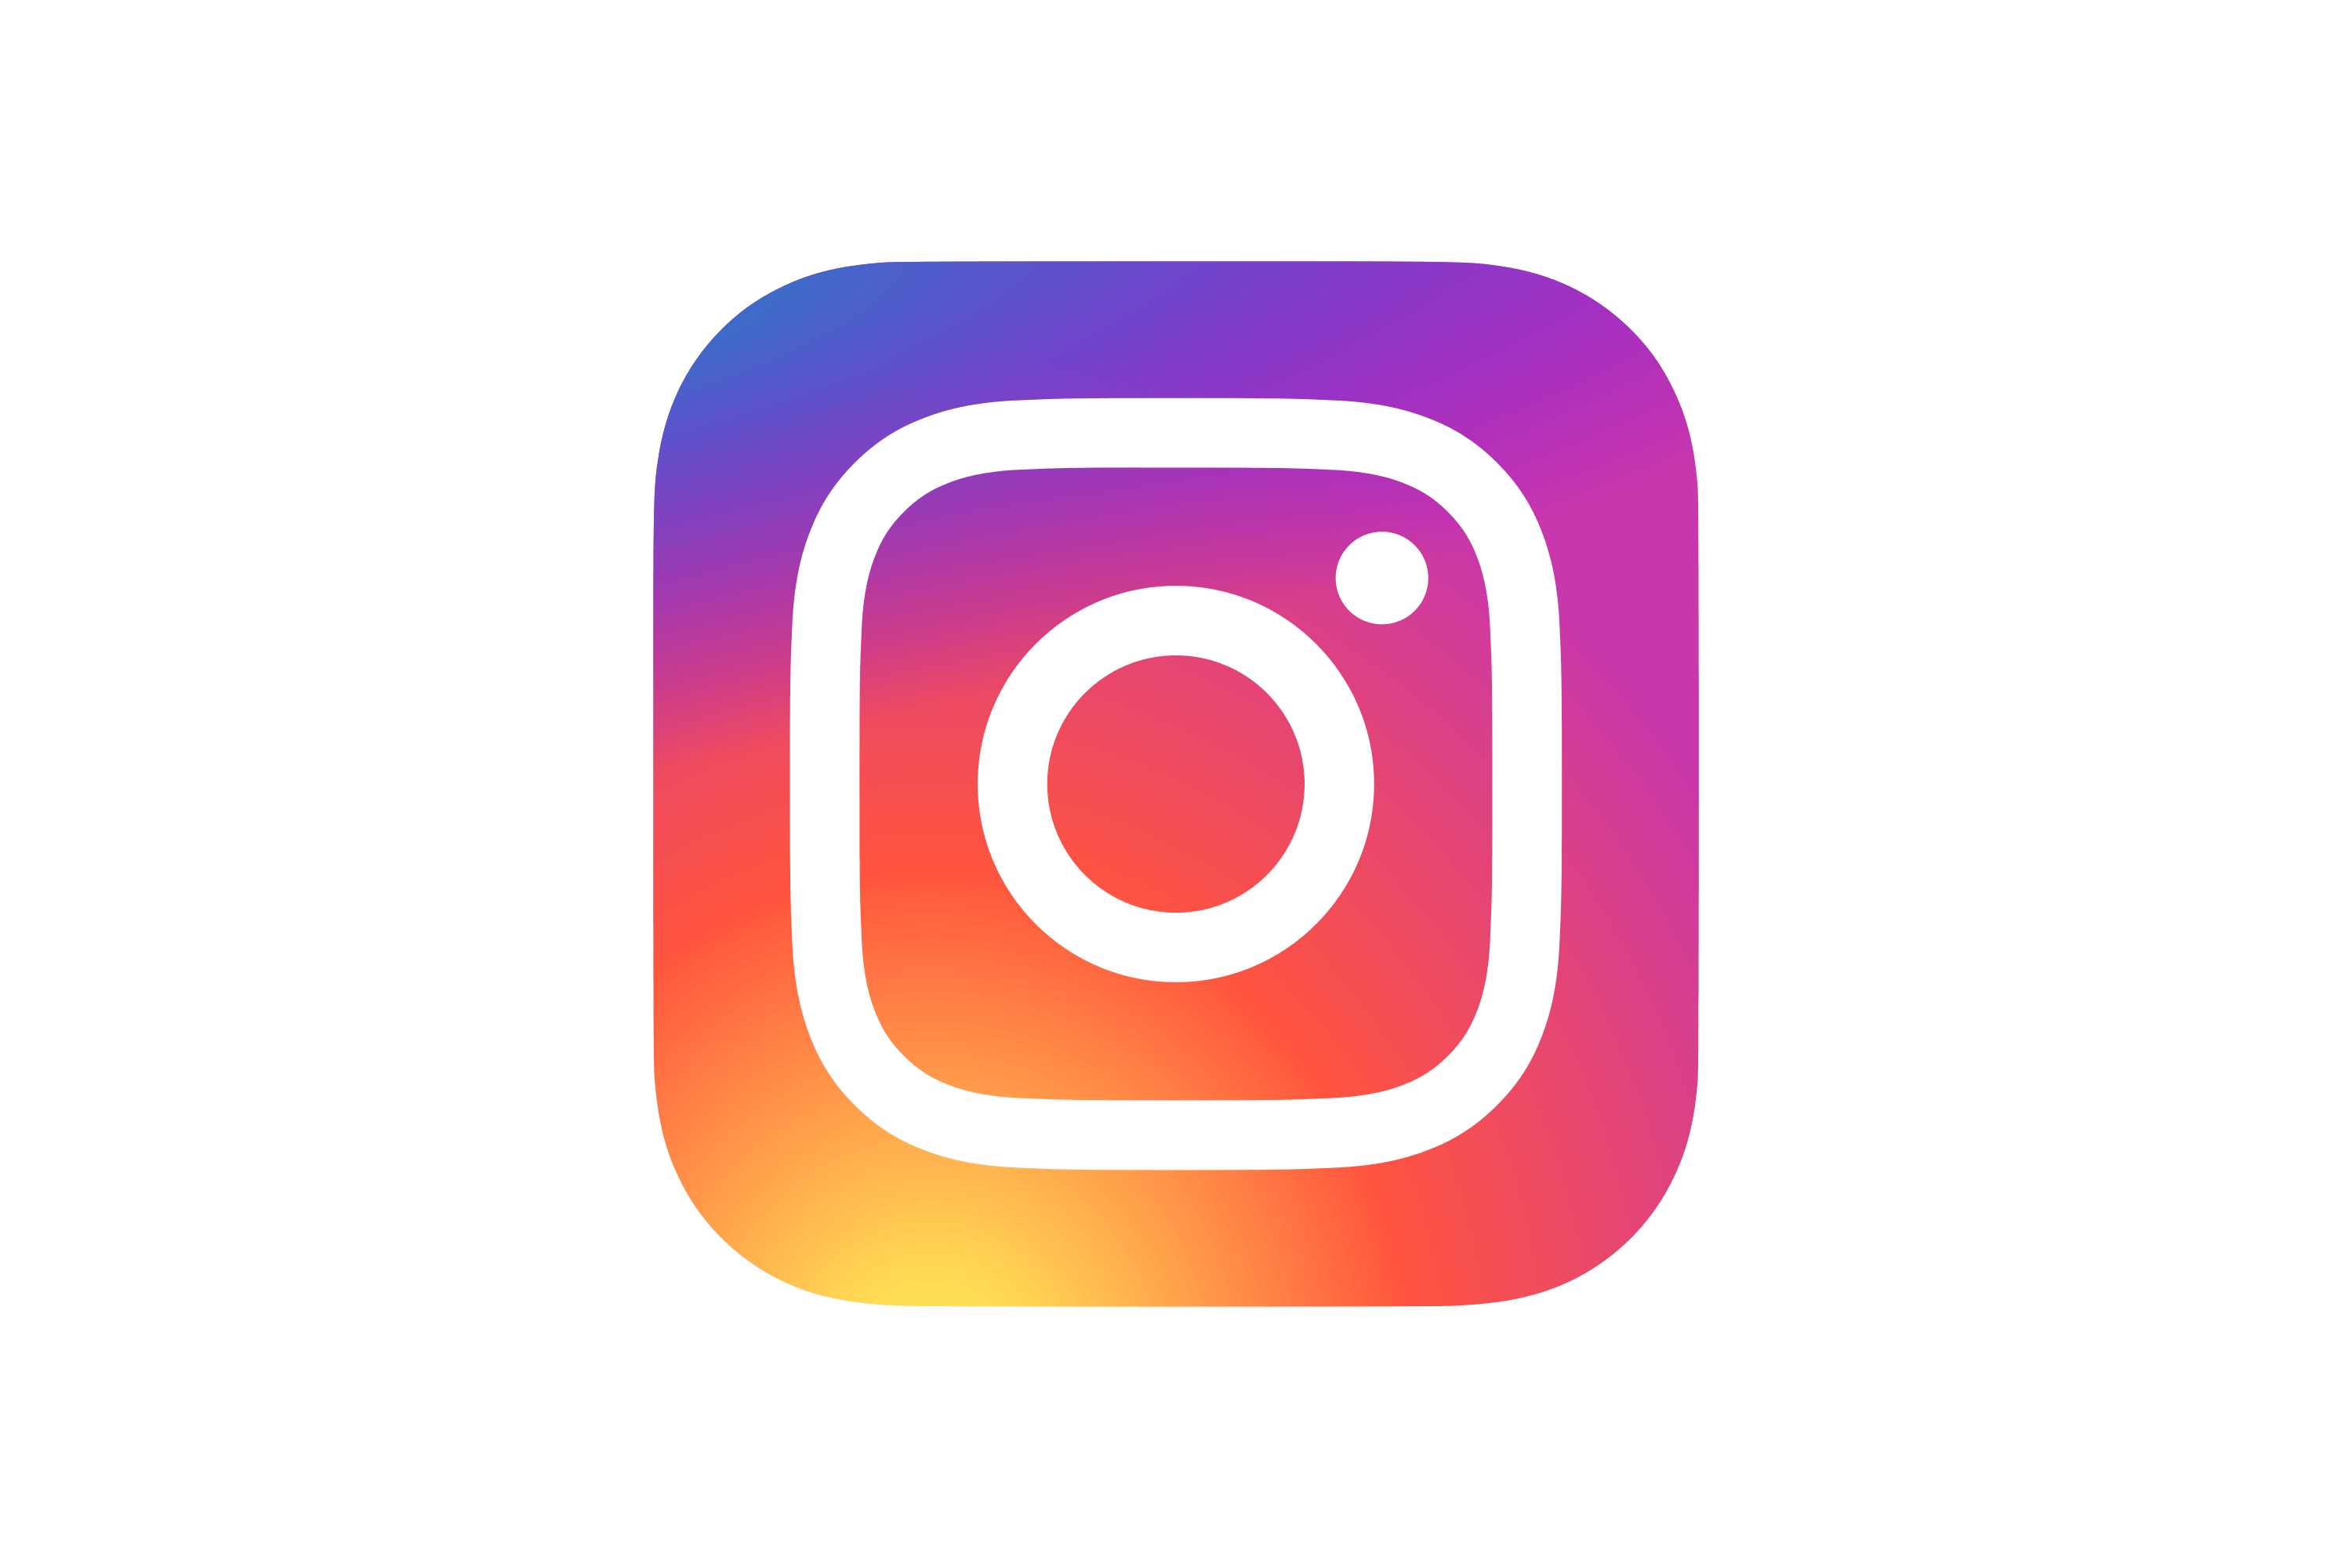 Instagram Logo Svg File Design Talk